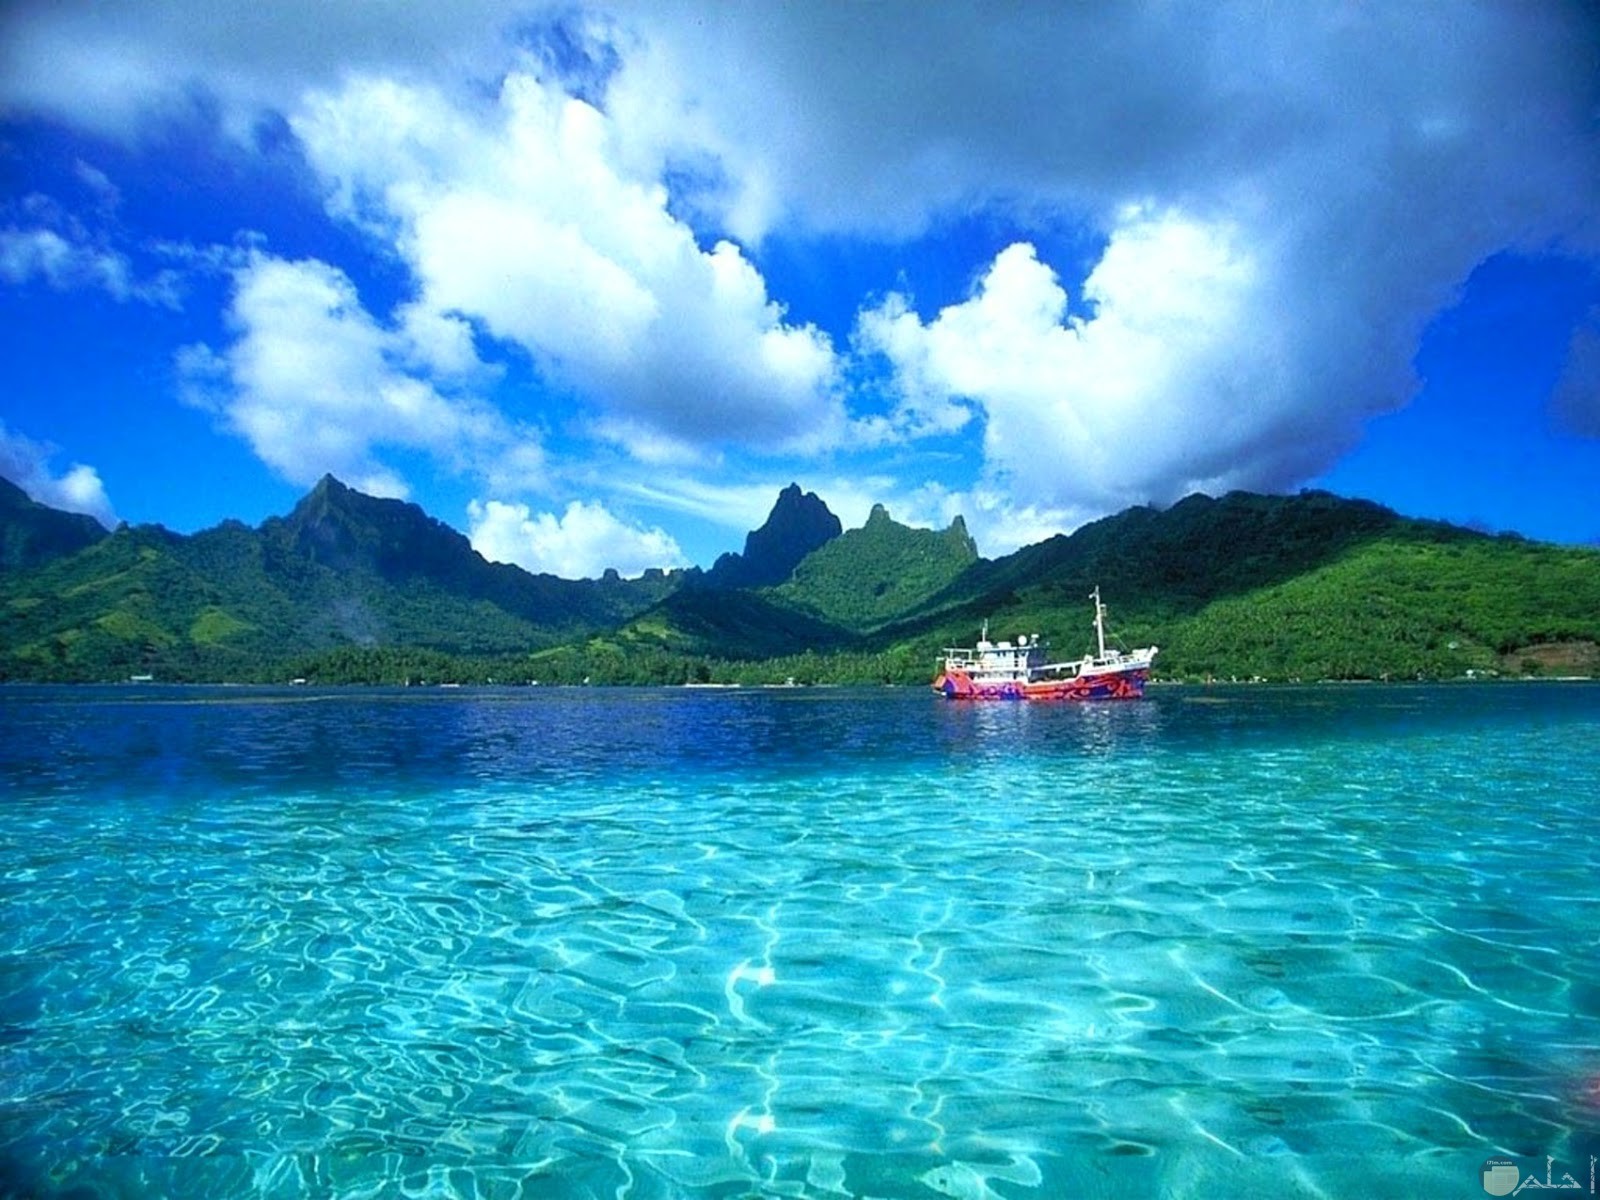 بحر له مياه صافية شفافة جميلة و جبال جزيرة تظهر من بعيد.